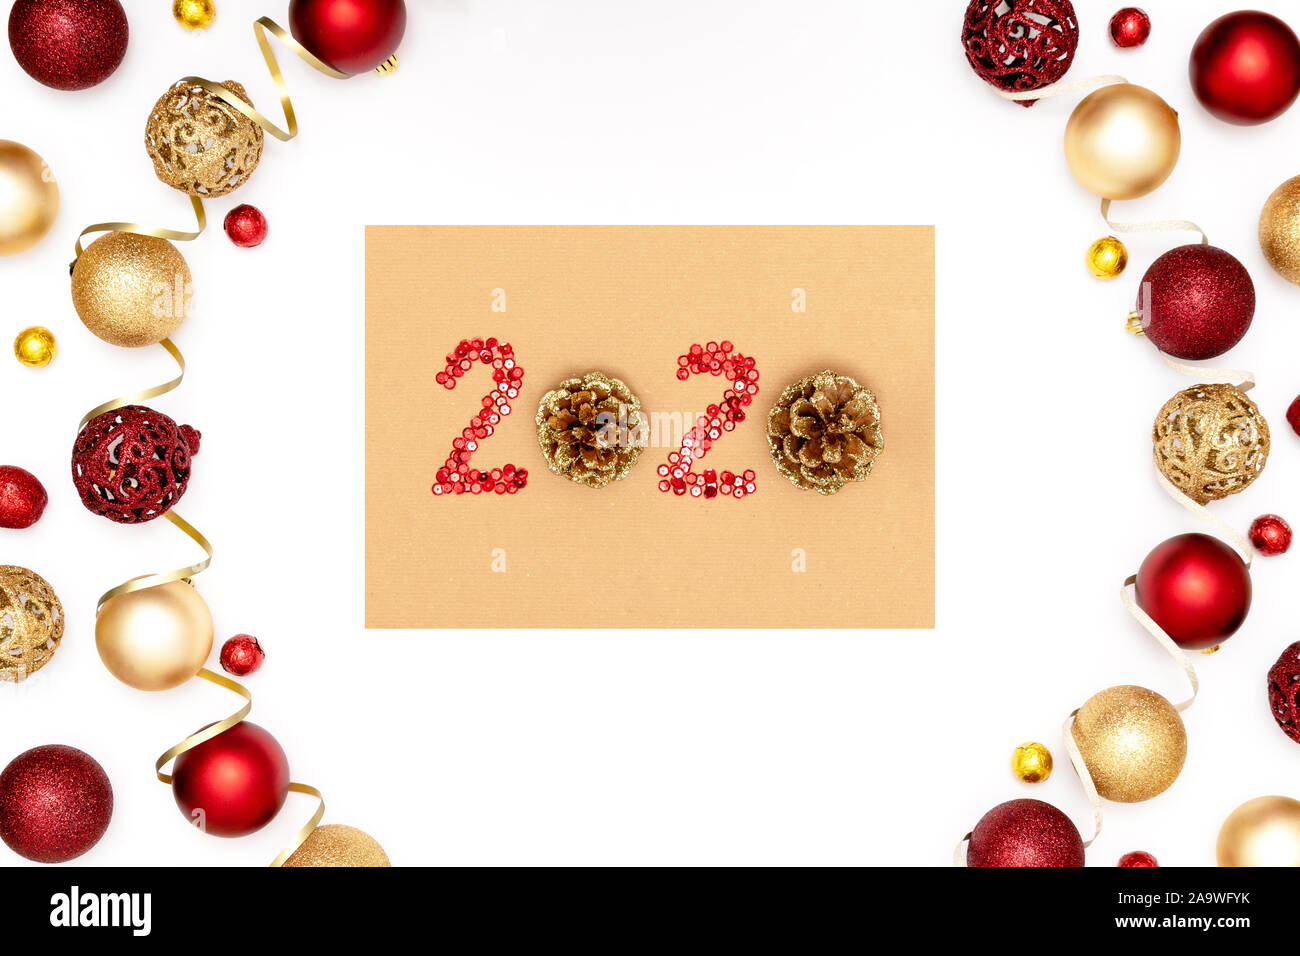 2020 a fait des étincelles rouges décoratifs et des jouets de Noël sur l'artisanat feuille de papier. À partir de la trame des boules de noël. Bonne année 2020 concept Banque D'Images